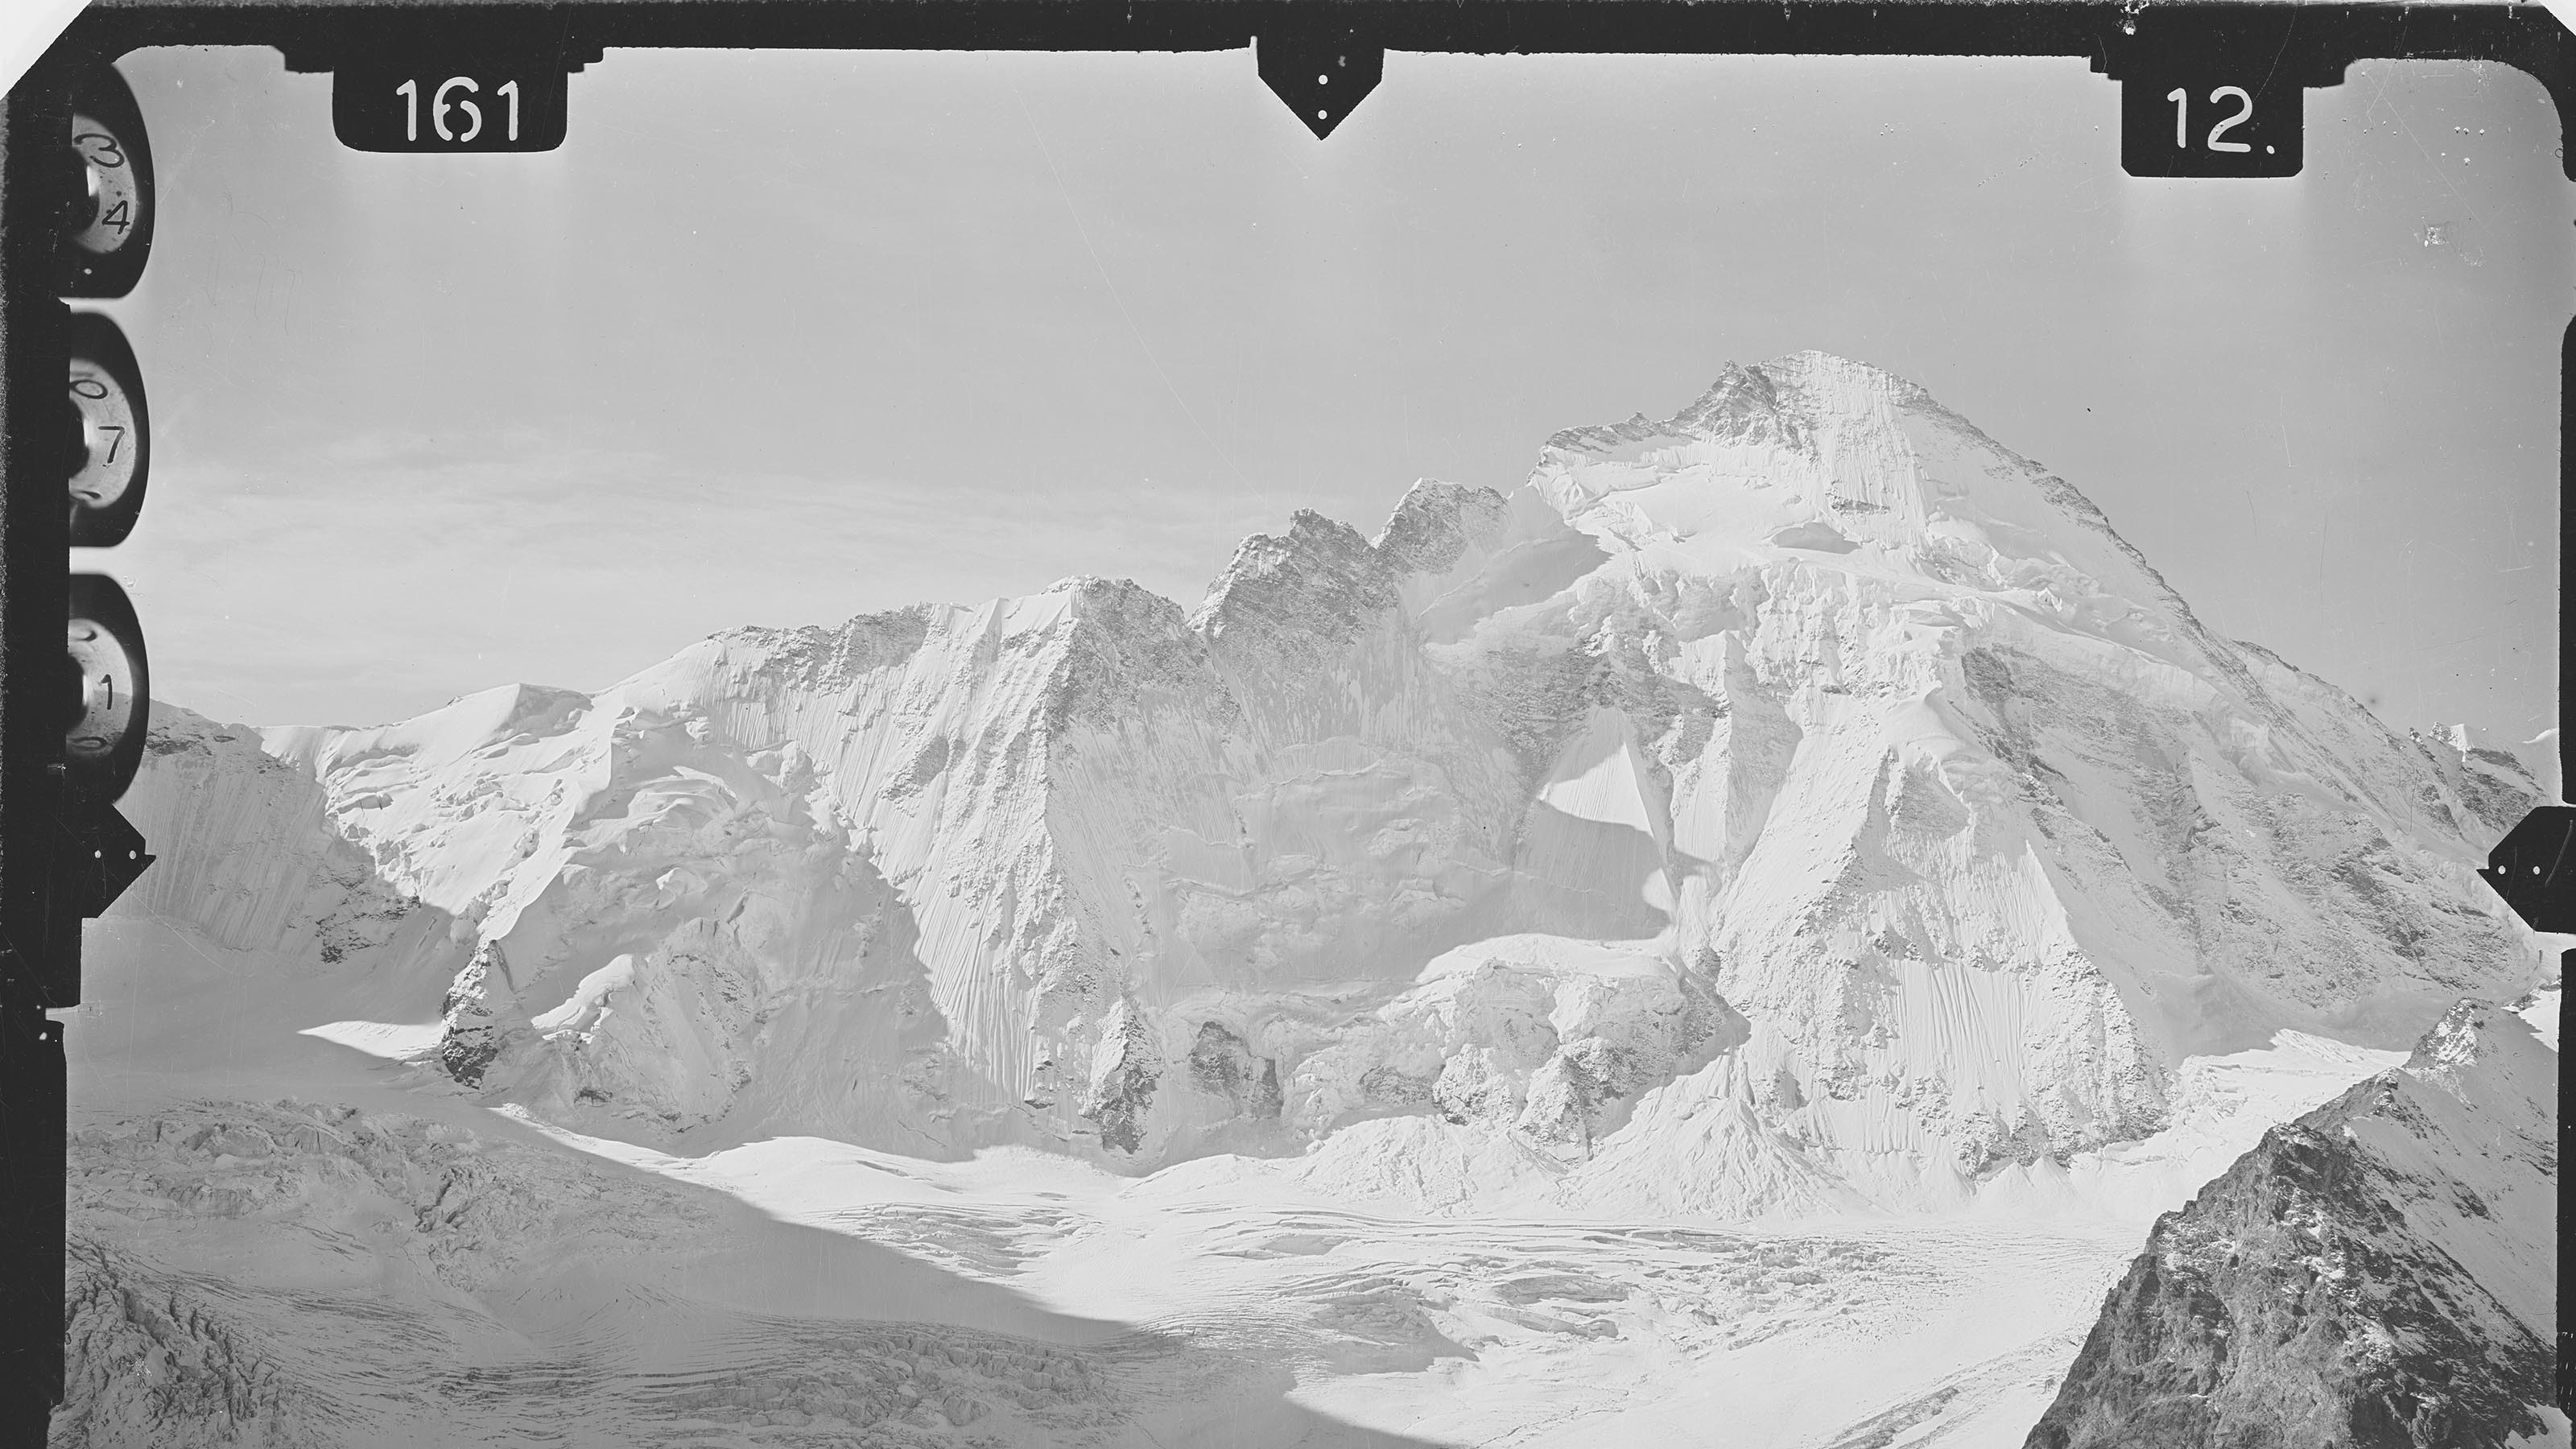 Schneebedeckte Dent d'Hérens auf einer terrestrischen Aufnahme. Die Rahmenmarken des Messbilds sind sichtbar.